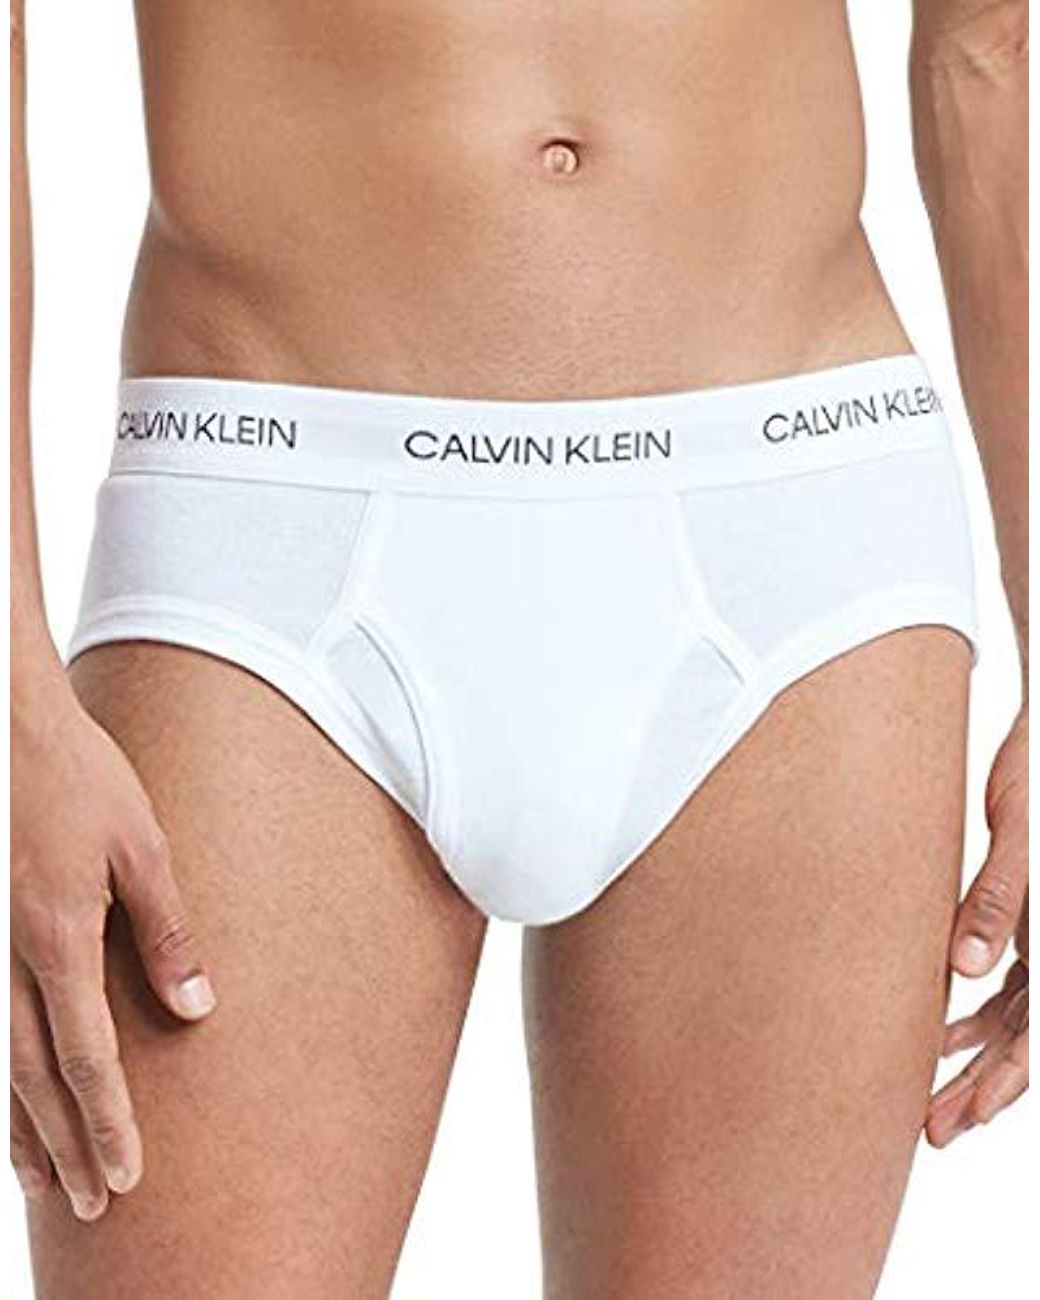 Calvin Klein Underwear Cotton Statement 1981 Low Rise Fly Front